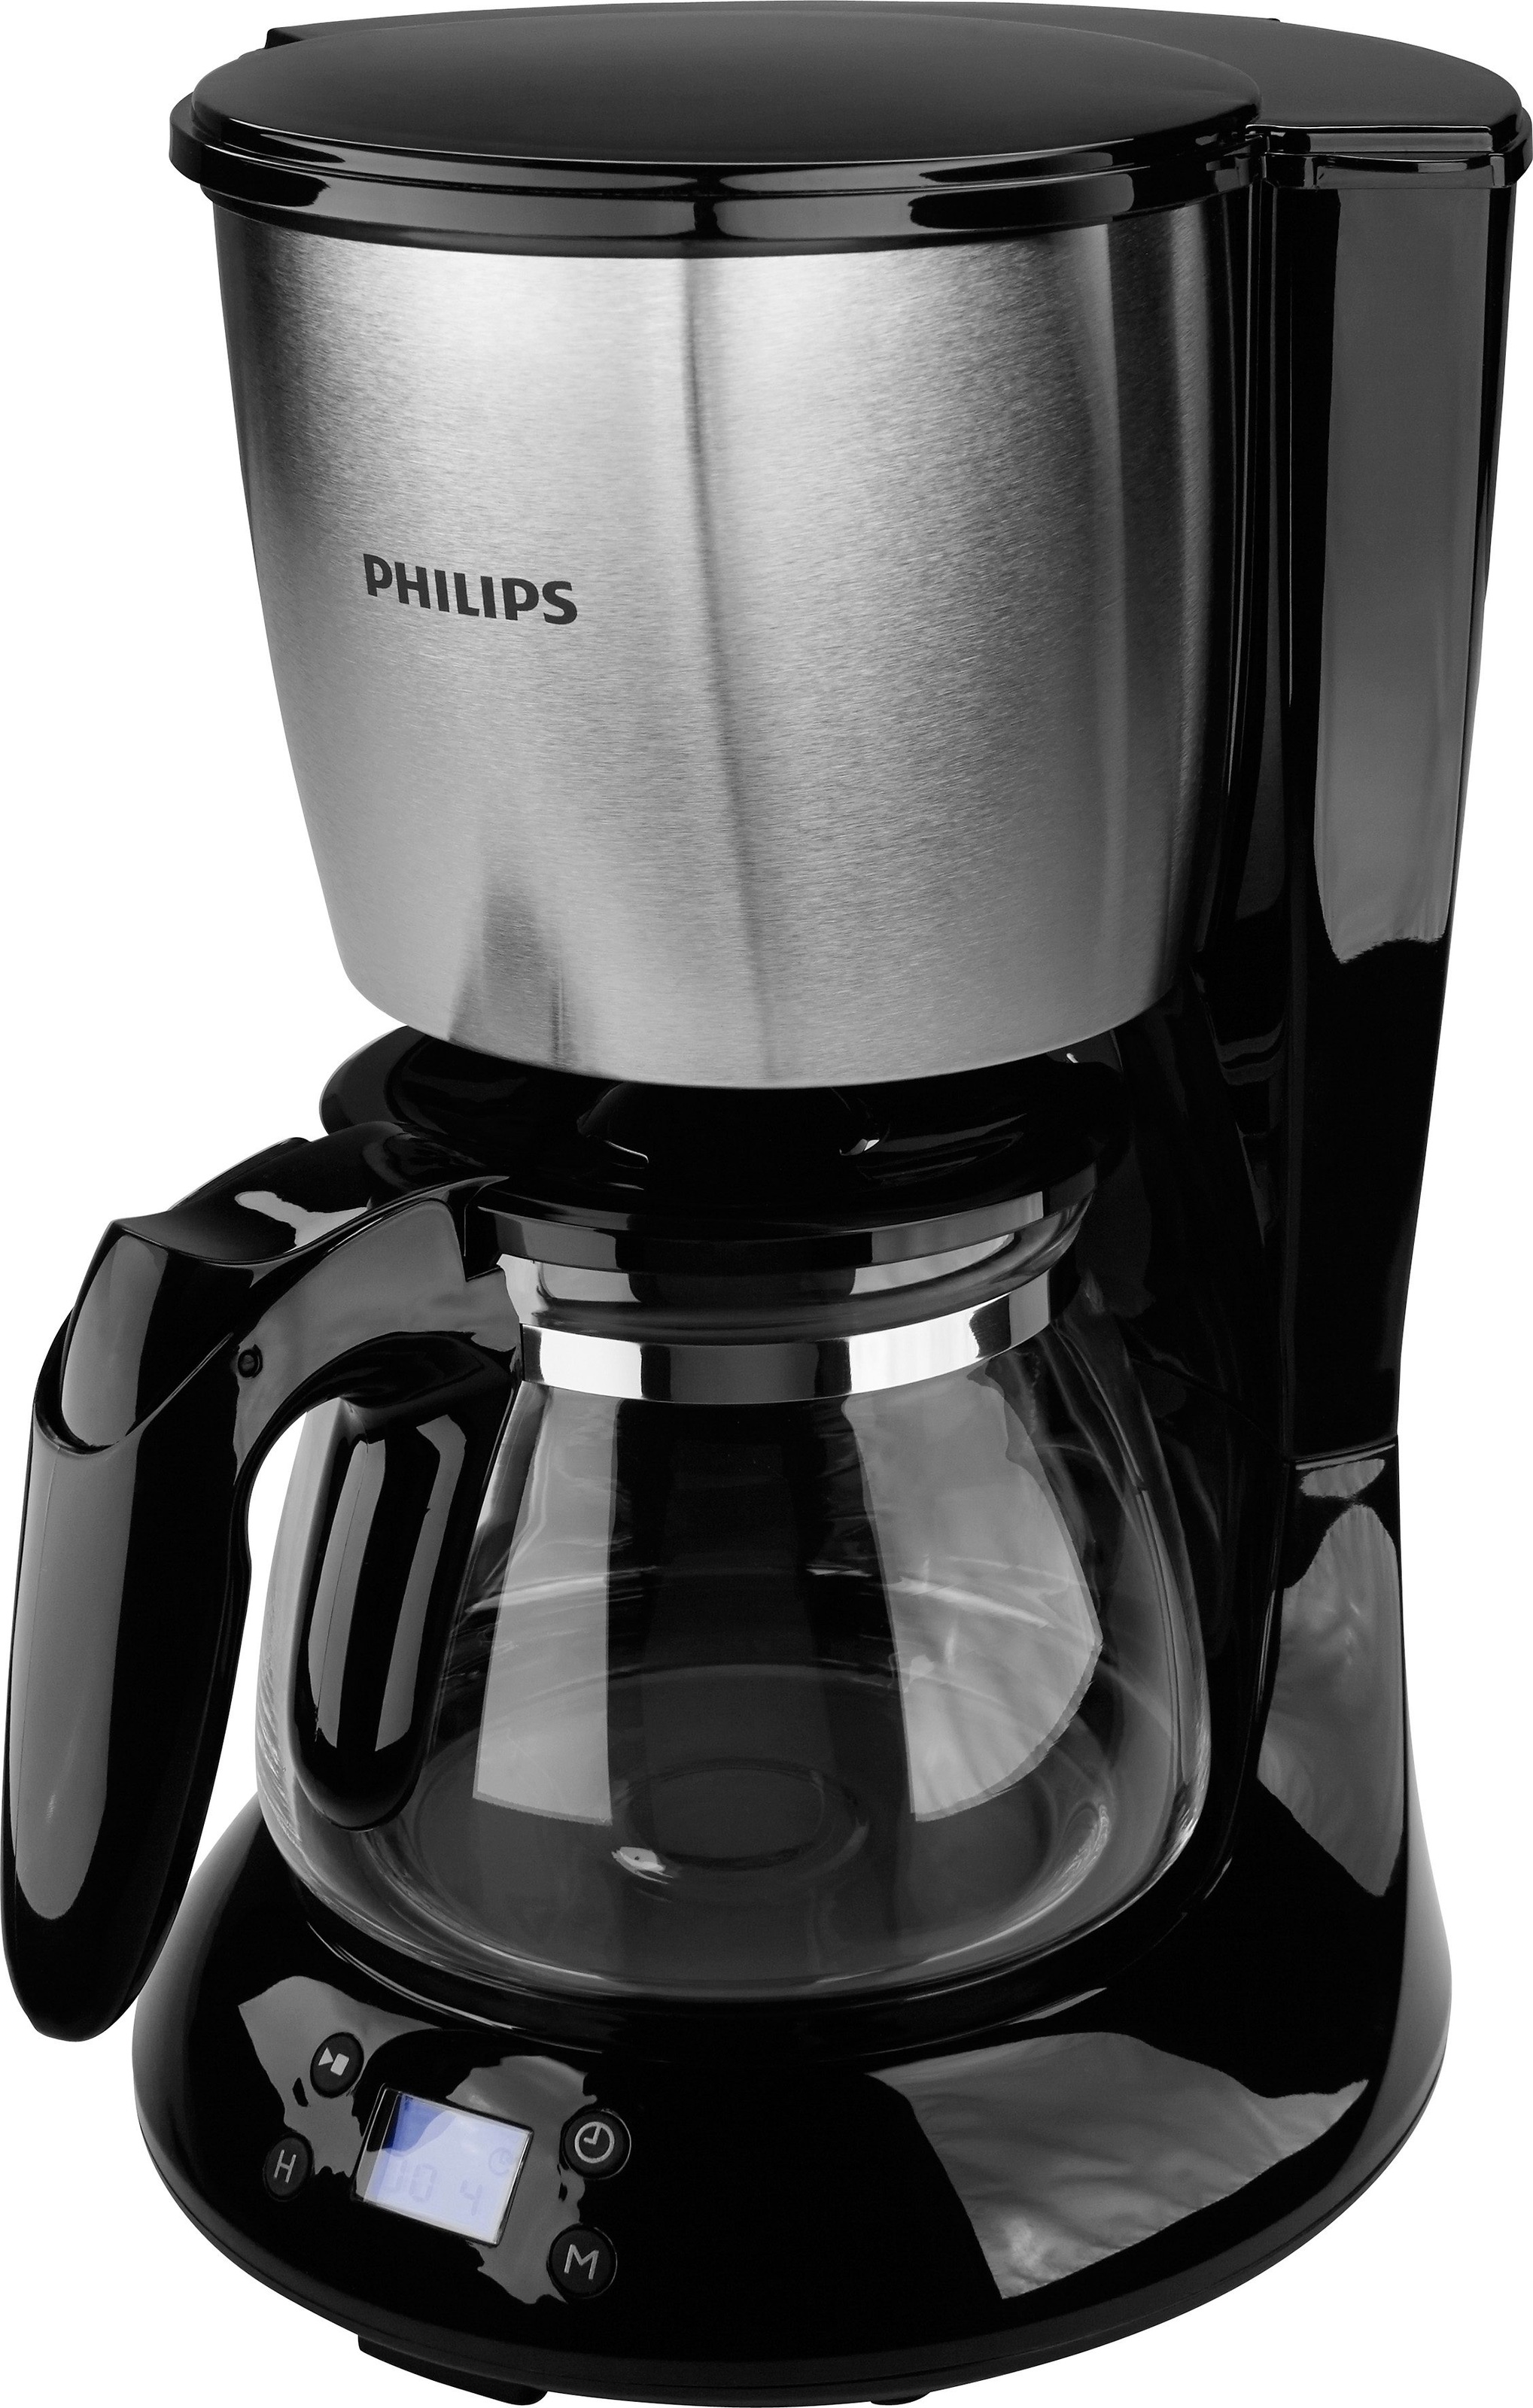 Philips Filterkaffeemaschine »HD7459/20 Daily Collection«, 1,2 l Kaffeekanne  jetzt kaufen bei OTTO